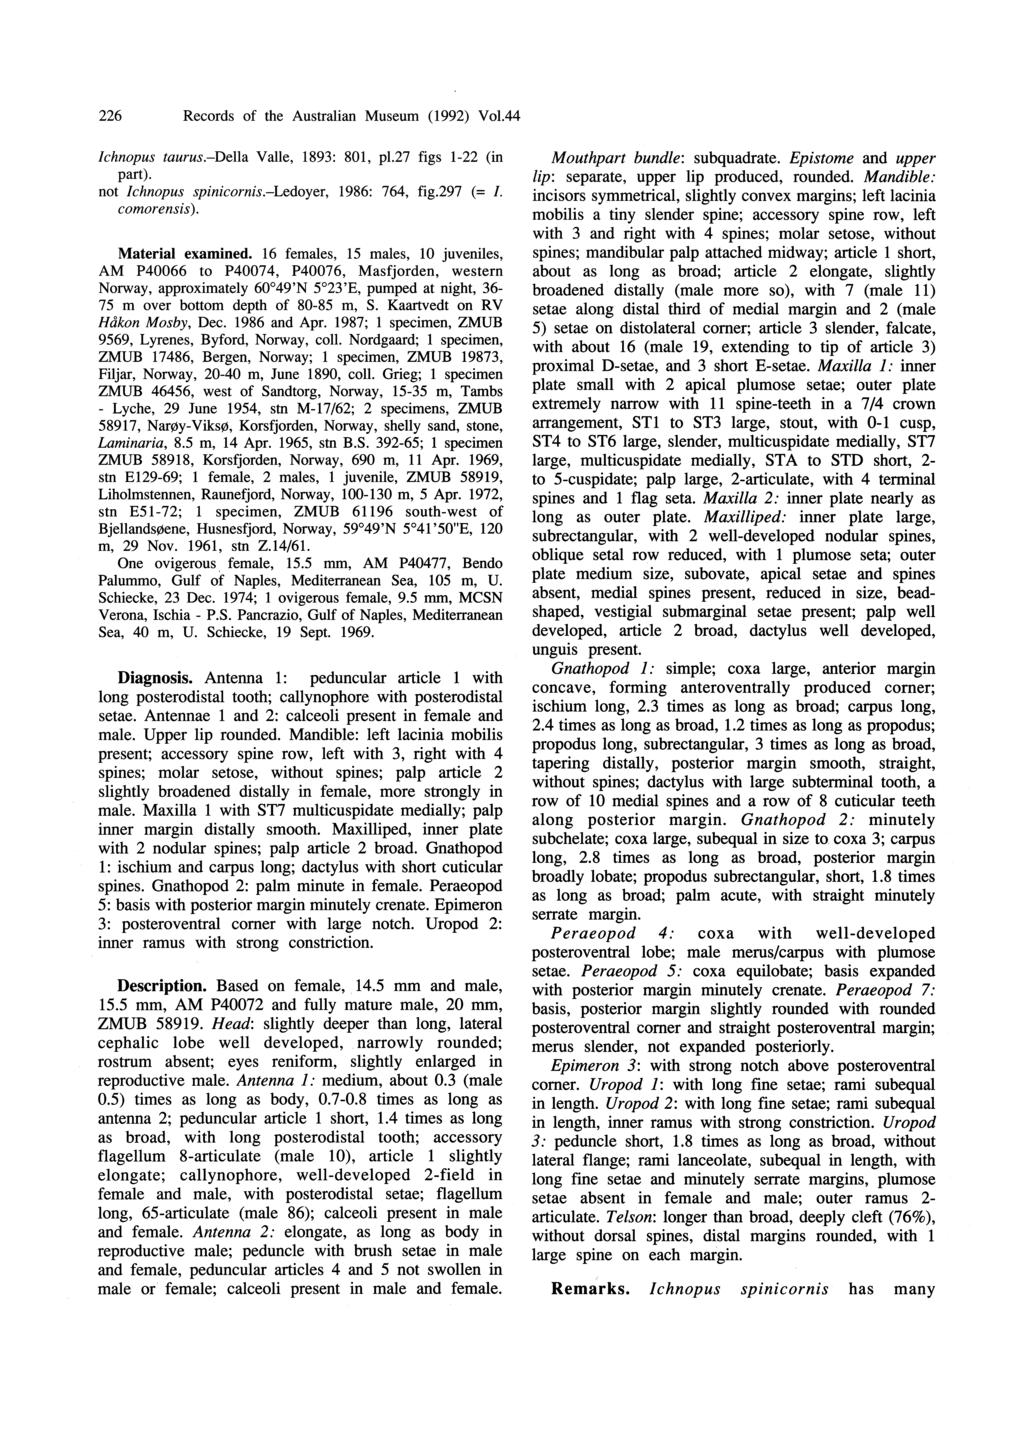 226 Records of the Australian Museum (1992) Vol.44 Ichnopus taurus.-della Valle, 1893: 801, pl.27 figs 1-22 (in part). not Ichnopus spinicornis.-ledoyer, 1986: 764, fig.297 (= I. comorensis).